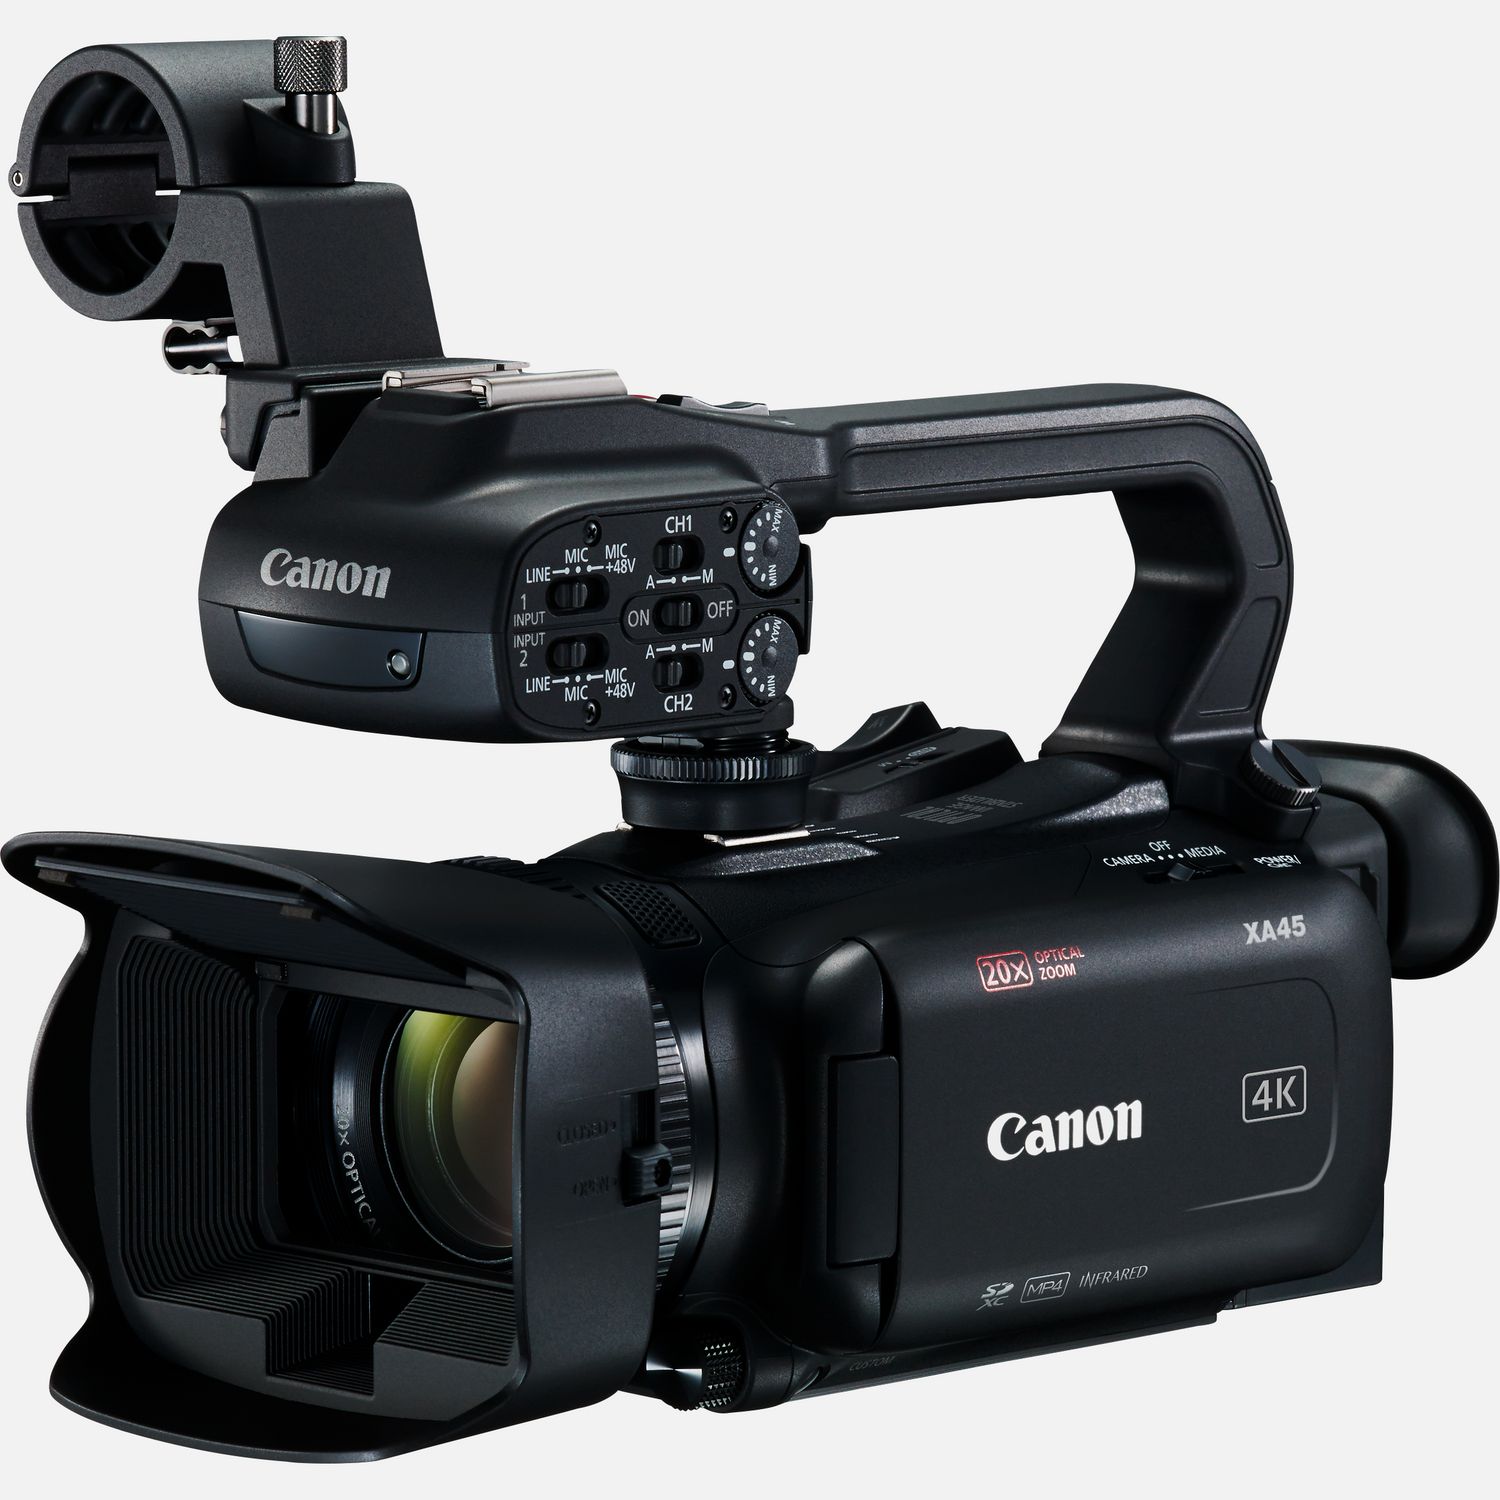 Die Canon XA45 ist eine professionelle 4K UHD-Videokamera mit einer ausgewogenen Balance aus Bildqualitt, professionellen Funktionen und kompakter Gre. Die nur 1,2 kg schwere XA45 verfgt ber ein leistungsstarkes Objektiv mit 20fach optischem Zoom, einen 1/2,3-Zoll-Typ 4K-CMOS-Sensor und einen DIGIC DV6 Bildprozessor, der fr scharfe, farbintensive und einzigartige Bilder sorgt. Dank der leistungsstarken 5-Achsen-Bildstabilisierung liefert der Camcorder ruhige Bilder und mit dem Weitwinkelbereich ab 29,3mm bekommst du mehr auf das Bild. Zu den professionellen Funktionen gehren ein Infrarot-Modus fr Aufnahmen bei sehr wenig oder gar keinem Licht, lineares PCM 4-Kanal-Audio mit integriertem Stereomikrofon, zwei XLR-Anschlsse fr externe Mikrofone, 3G-SDI und zwei SD-Speicherkartenslots fr die simultane oder fortlaufende Aufnahme.  Vorteile      Ultrakompakter professioneller 4K UHD-Camcorder fr kleine Produktionen und aktuelle Nachrichten          Halte die wichtigen Momente in 4K mit 20fach optischem Zoom und einer Weitwinkelbrennweite ab 29,3mm fest          Fr ruhige Aufnahmen sorgt der leistungsstarke 5-Achsen-Bildstabilisator, whrend eine 3D-Linsengruppe praktisch in Echtzeit die Weitwinkelzoom-Funktion untersttzt.          Zeitlupen- und Zeitraffer-Aufnahmemodi sind sowohl in UHD als auch in FullHD verfgbar, wobei die maximale Geschwindigkeit 1.200-fach betrgt          Mit nur ca. 1,2 kg ist der Camcorder leicht und kompakt, und das 3,0 Zoll Touchscreen-LCD ermglicht eine intuitive Steuerung          Der Infrarot-Modus ermglicht hochwertige Videoaufnahmen bei extrem wenig bis gar keinem Umgebungslicht          Zu den professionellen Funktionen gehren lineares PCM 4-Kanal-Audio mit integriertem Stereomikrofon, zwei XLR-Anschlsse, 3G-SDI und zwei SD-Speicherkartenslots fr die gleichzeitige oder fortlaufende Aufnahme          Lieferumfang       Canon XA45 Camcorder         Objektivabdeckung         Tragegriff HDU-1         Kompakt-Netzteil CA-570         Netzkabel         BP-820 Akku         Streulichtblende mit integriertem Objektivschutz         Mikrofonhalterung (mit Schrauben)         Ferritkern         Kurzanleitung              Technische Daten              MP4 bis zu 150 Mbps, XF-AVC bis zu 160 Mbps                4K-Weitwinkel-Zoomobjektiv                Verwendet den 4K UHD-Sensor, um erstklassige Full HD-Bilder zu generieren                Optimierter optischer Bildstabilisator mit Dynamic IS                Hochwertige Videoaufnahmen bei extrem wenig bis gar keinem Umgebungslicht                Intuitive Kamera- und Autofokussteuerung                2 XLR-Schnittstellen plus internes Stereomikrofon                Gleichzeitige oder fortlaufende Aufzeichnung auf SD-Karte          Alle technischen Daten zeigen